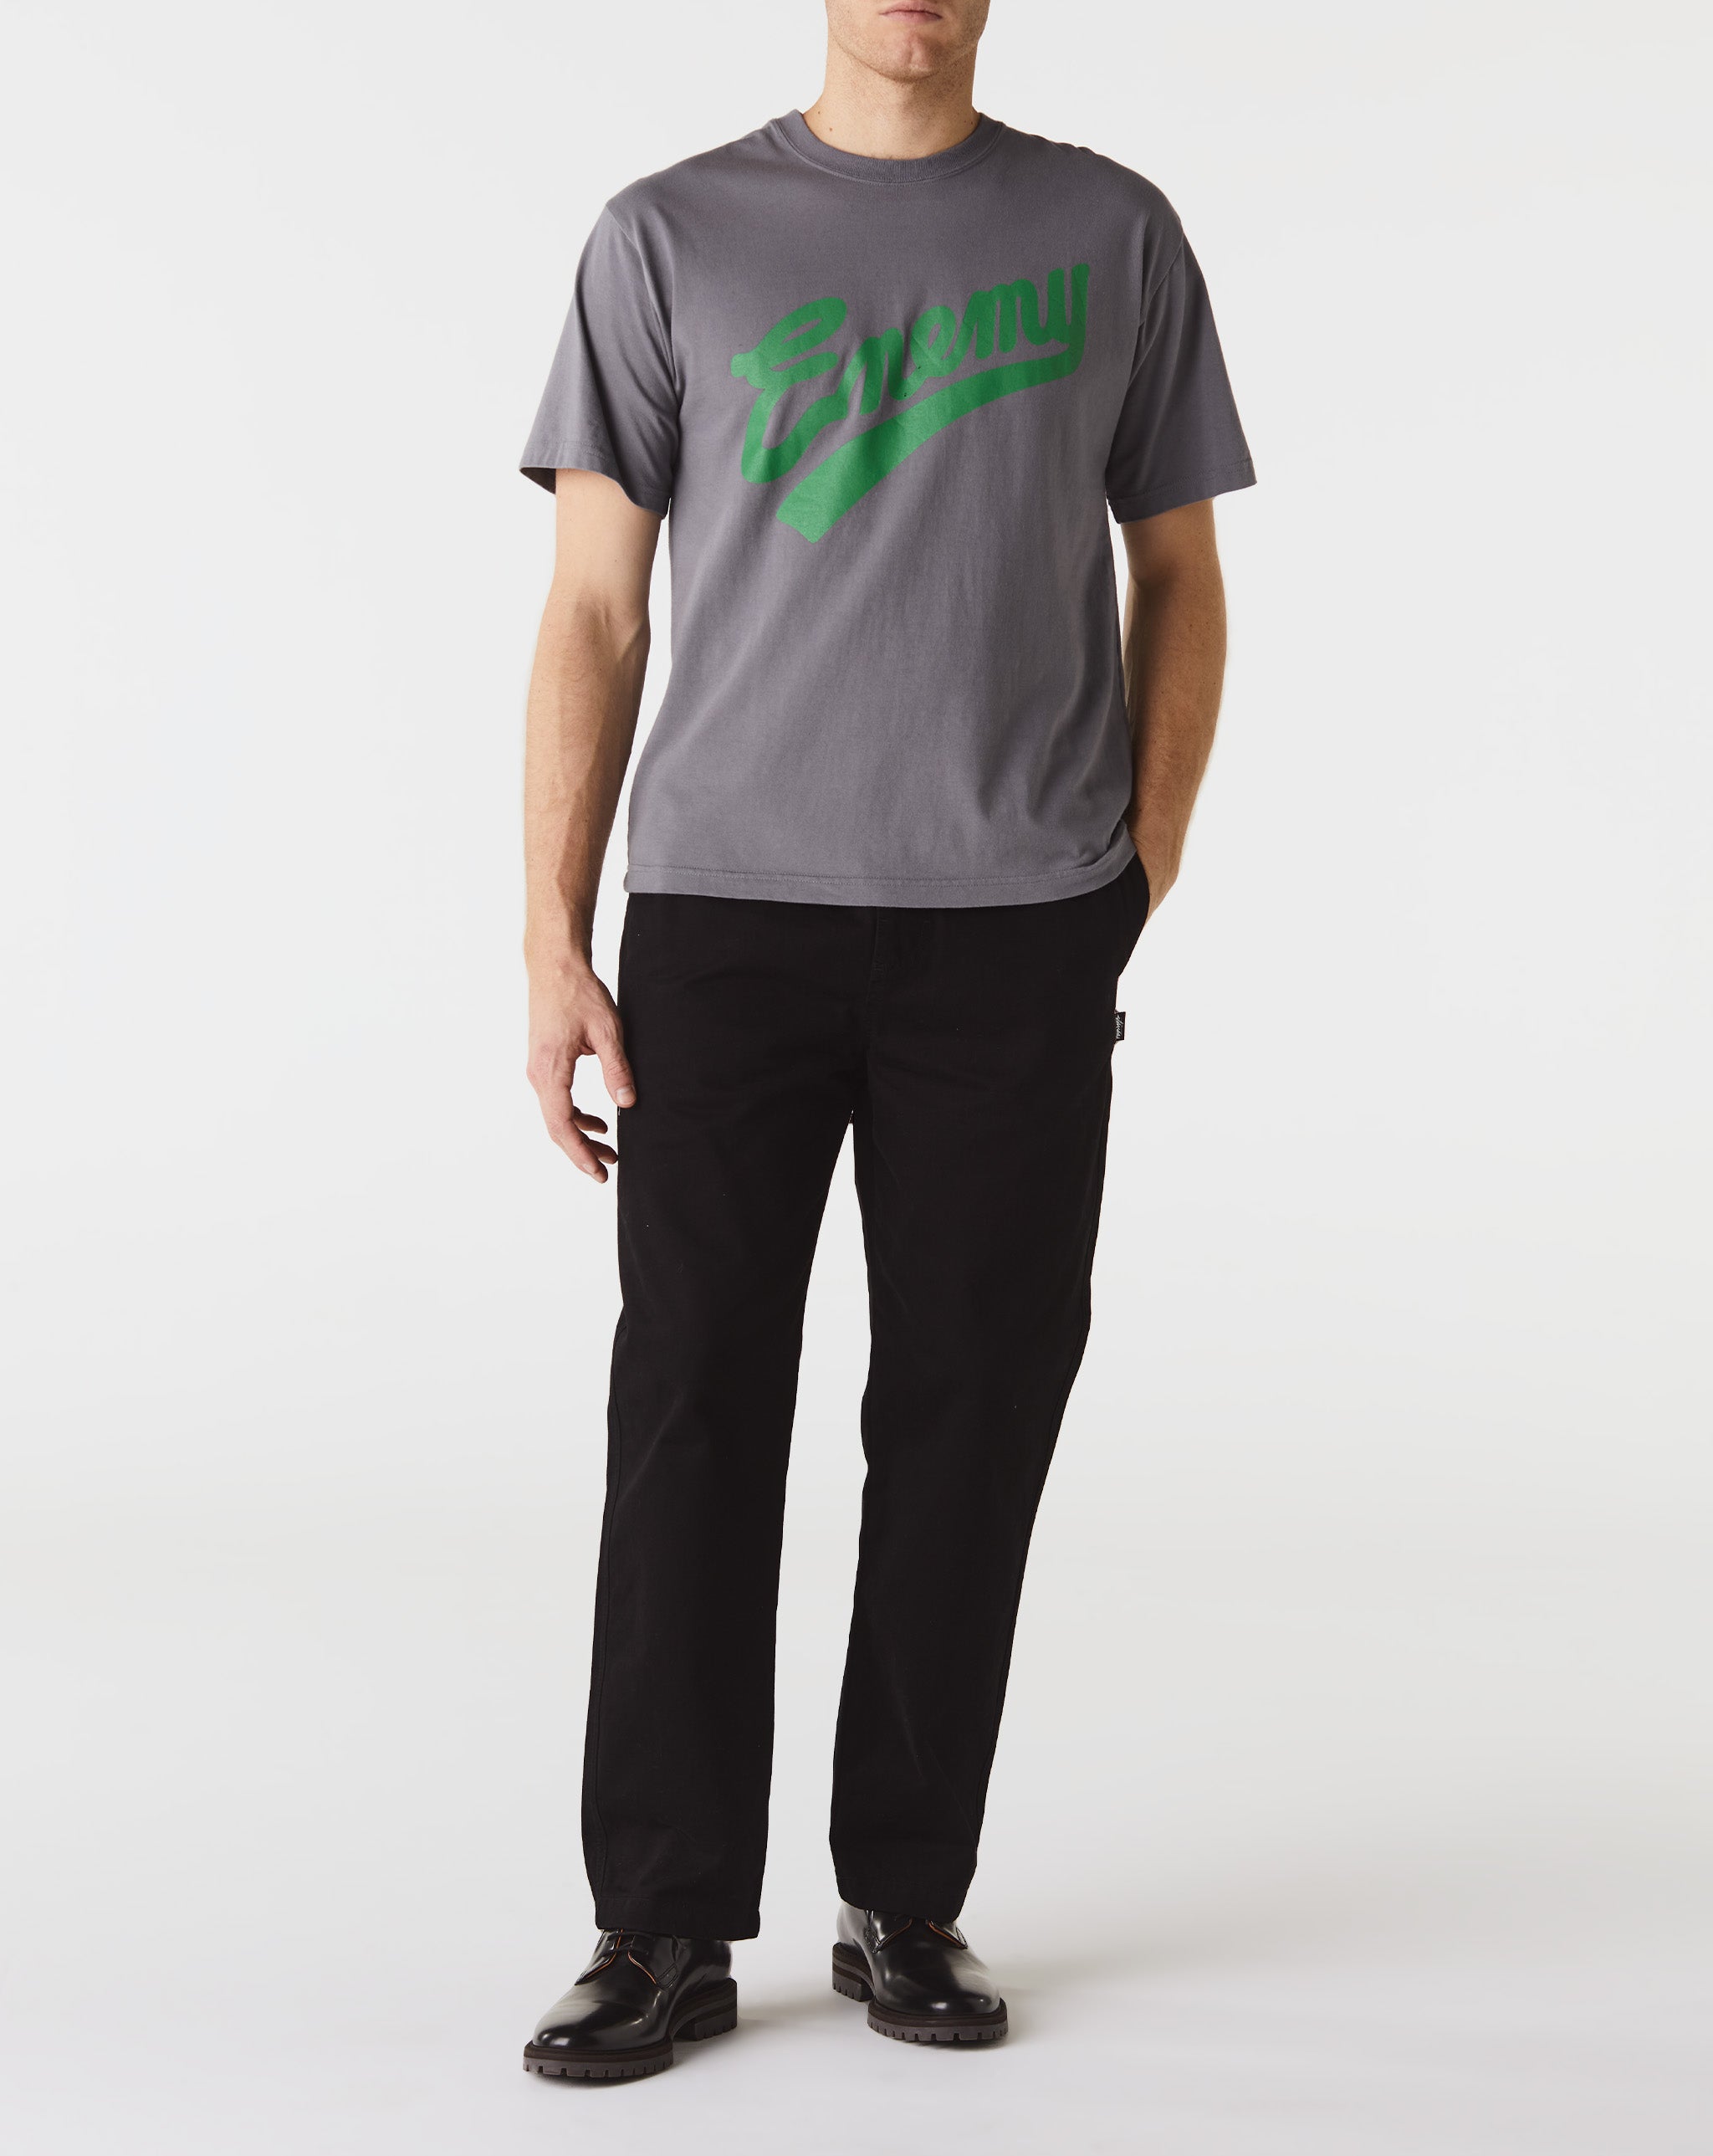 Neighborhood Classic T-Shirt 2-Pack  - Cheap Urlfreeze Jordan outlet